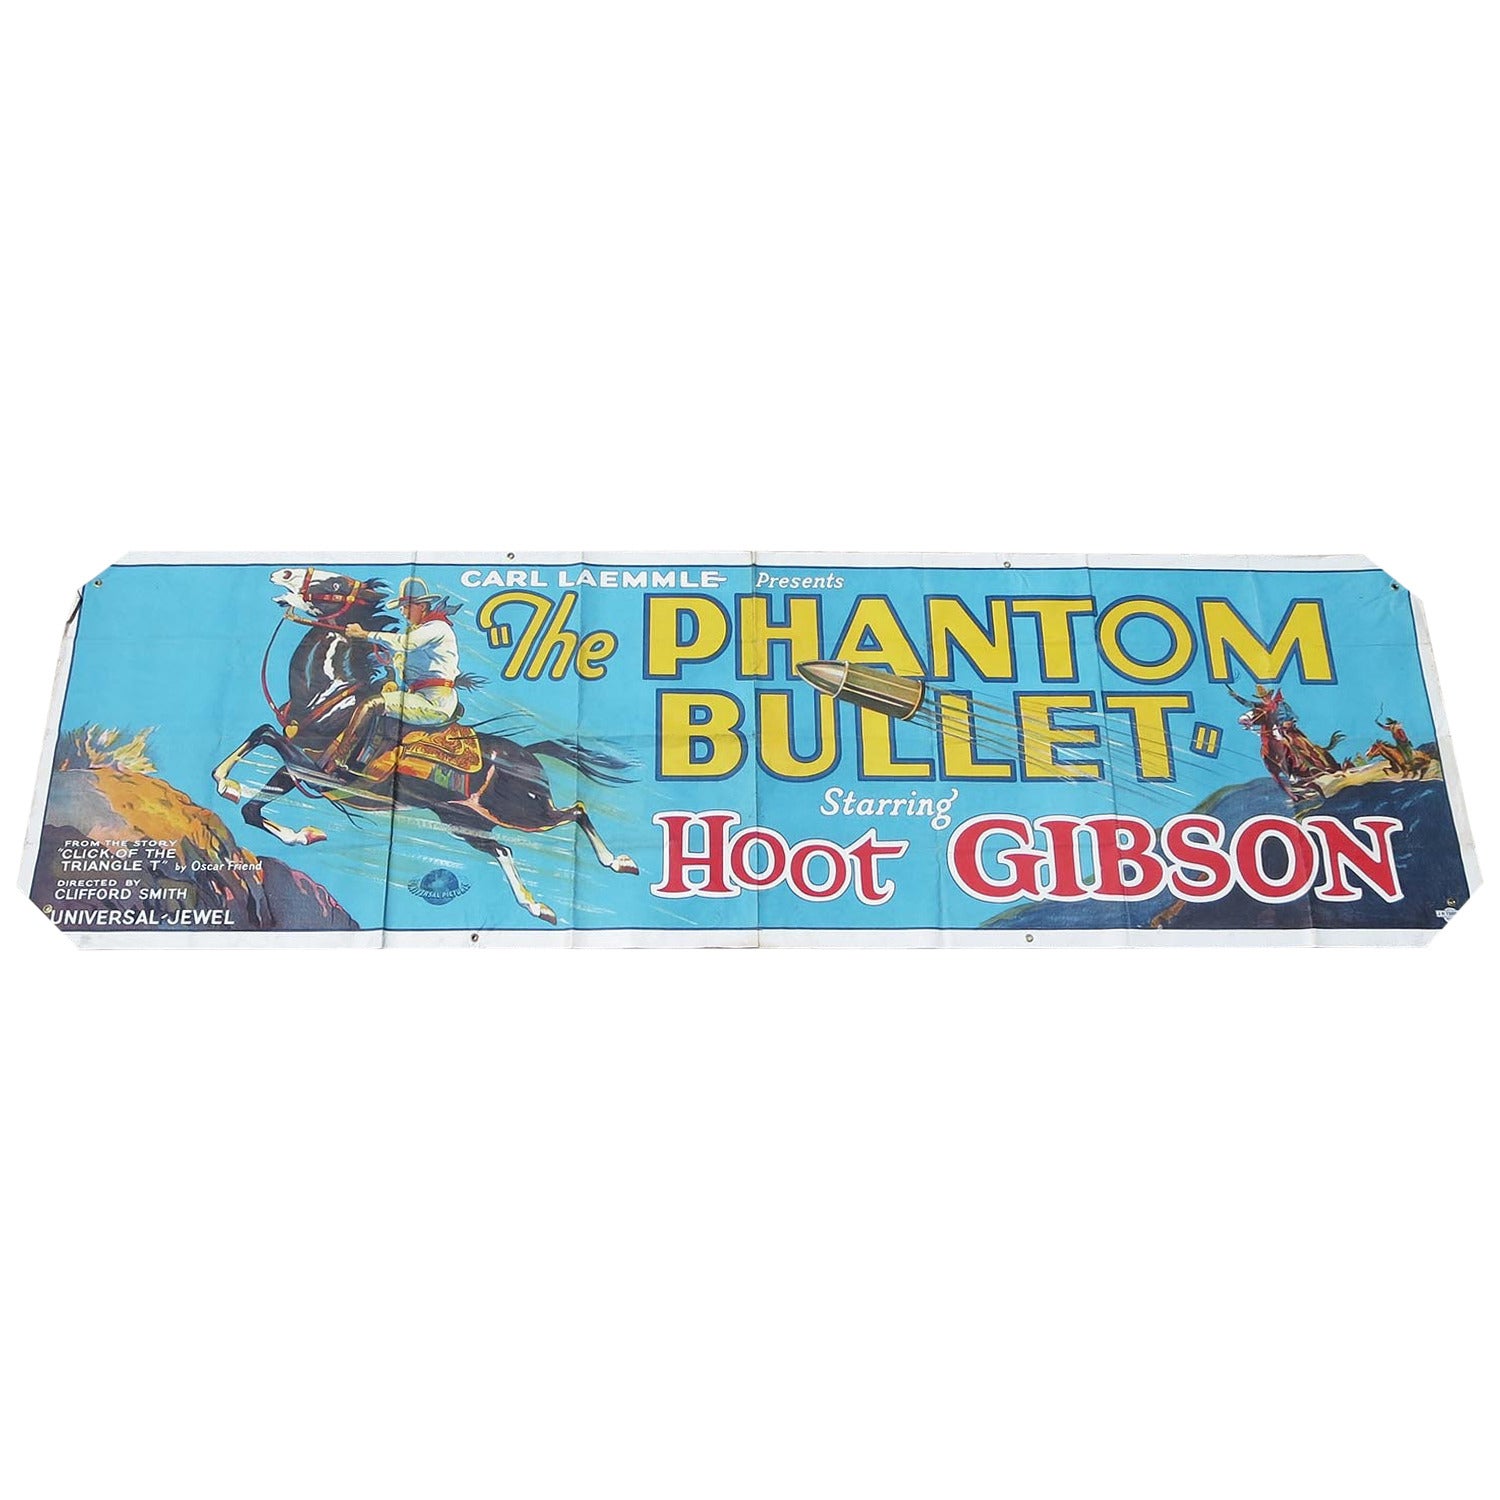 "The Phantom Bullet" Movie Advertising Banner Poster, 1926 For Sale